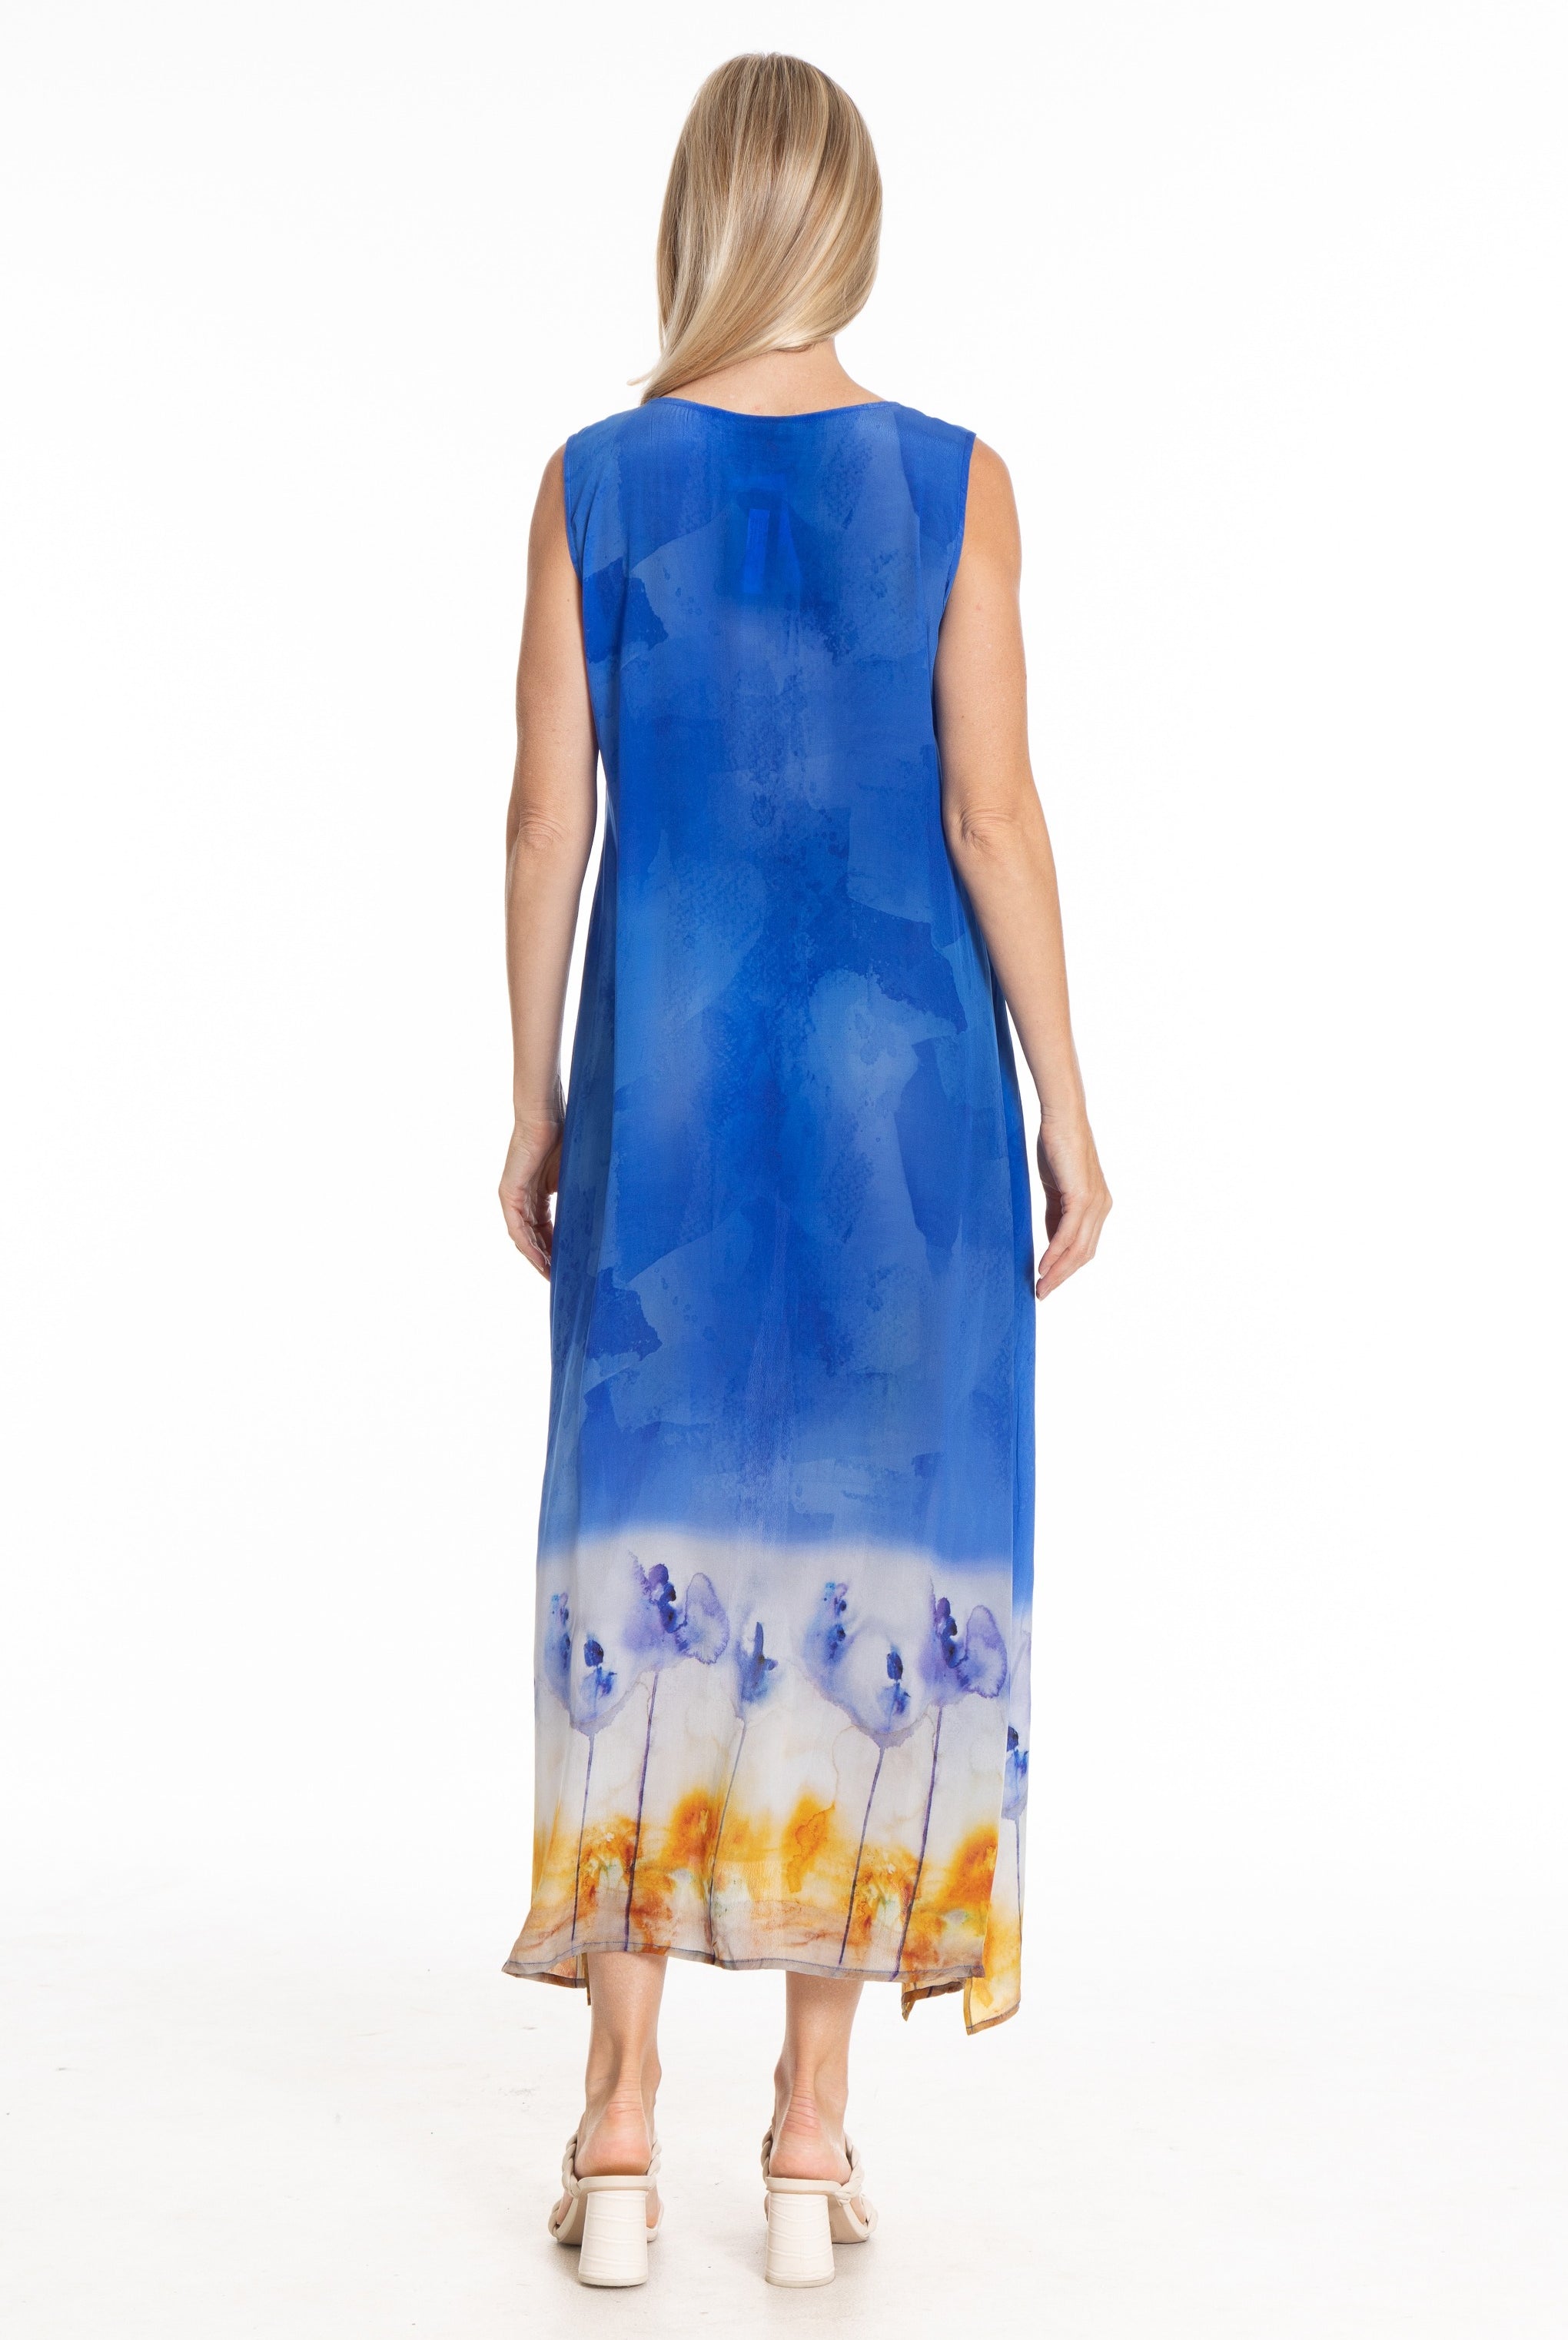 Abstract Nature Print - Long V-Neck Tank Dress